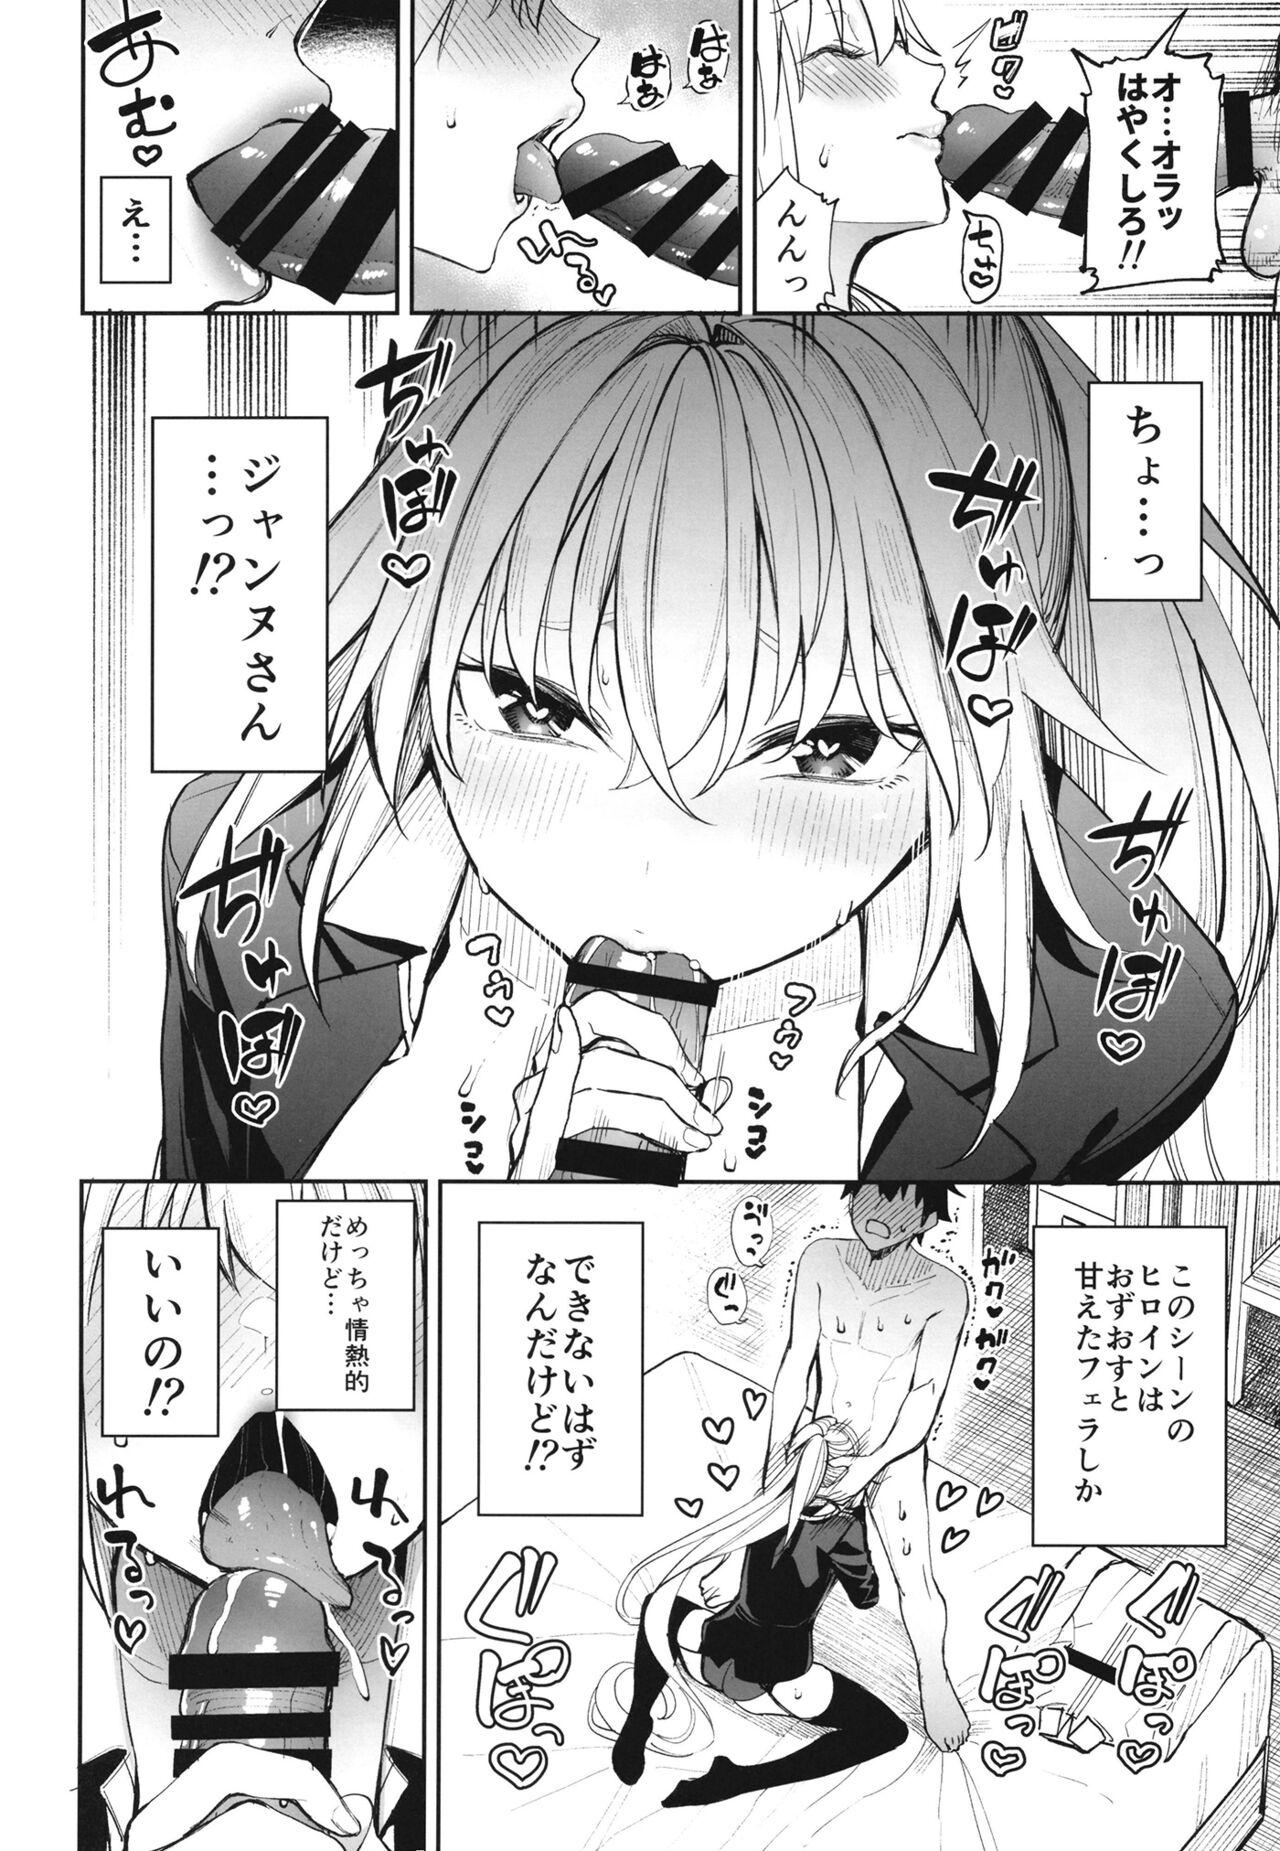 Riding Cock Anetachi ga natsu no umi demo guigui kuru kudan. - Fate grand order Soft - Page 9